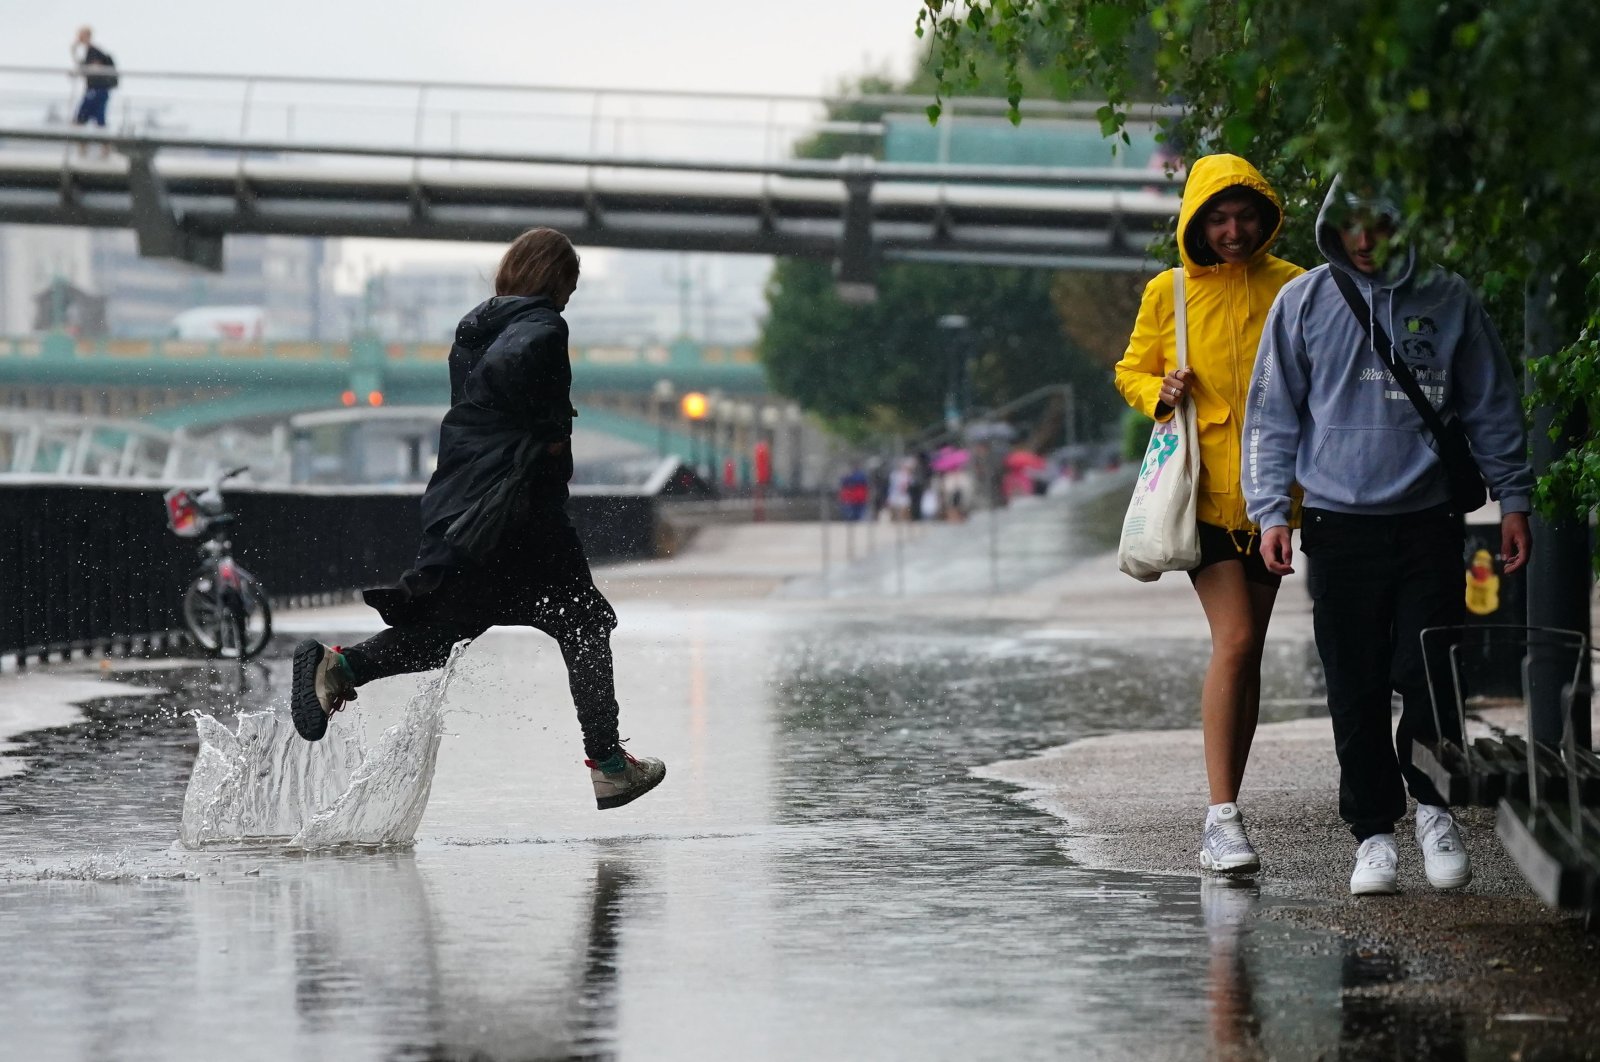 Kekeringan pertama, sekarang hujan deras saat badai menyebabkan beberapa orang tewas di Eropa